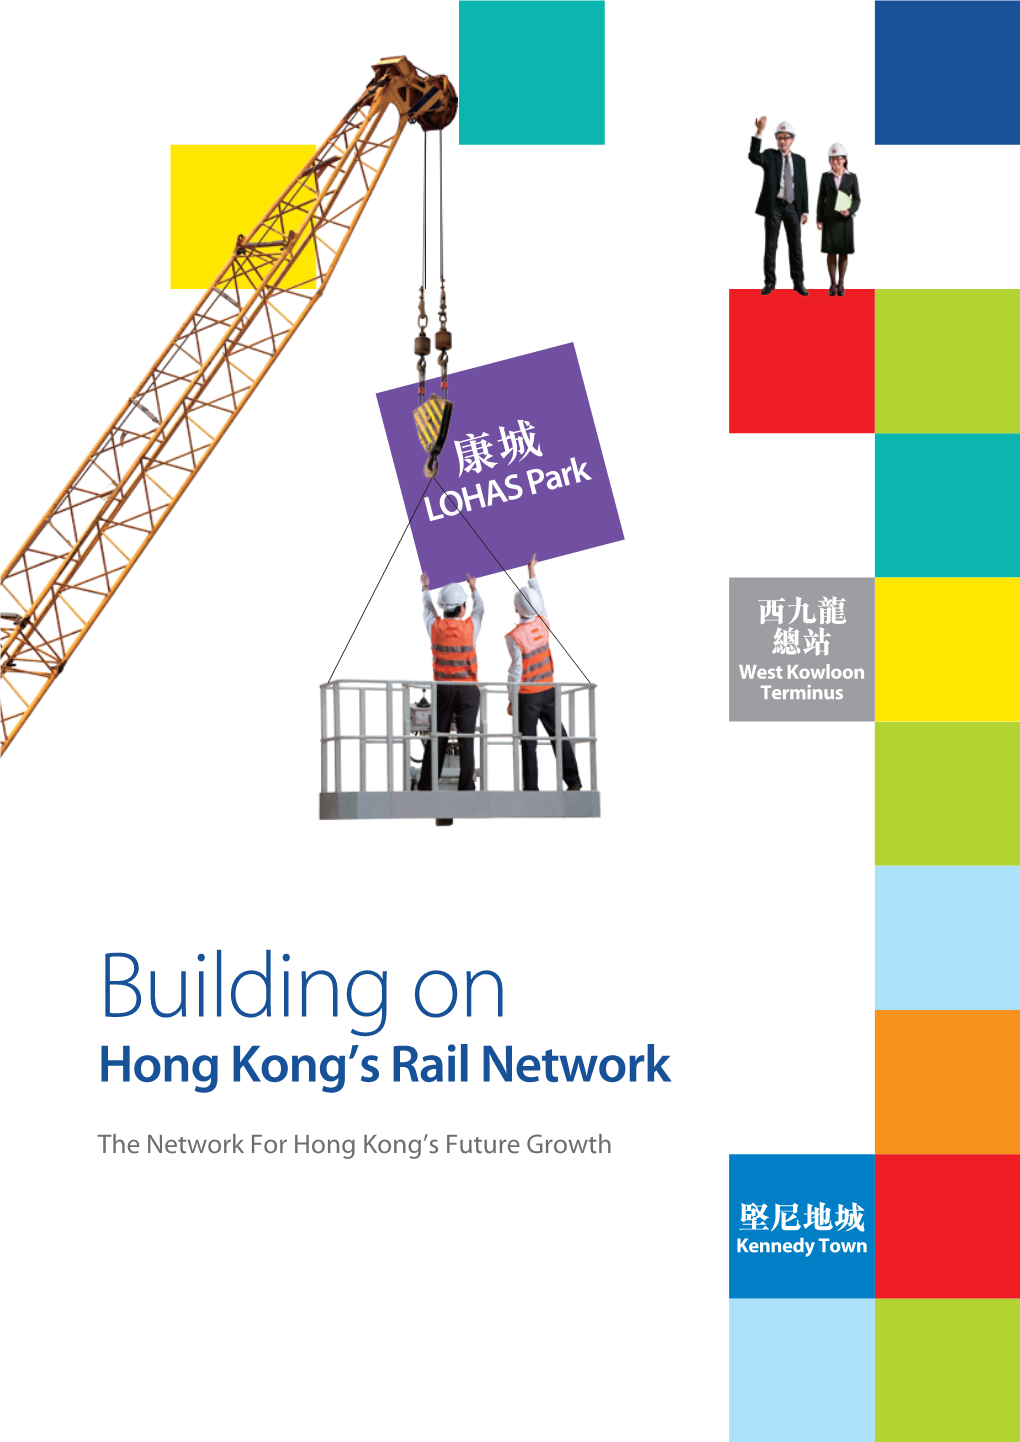 Hong Kong Network Expansion